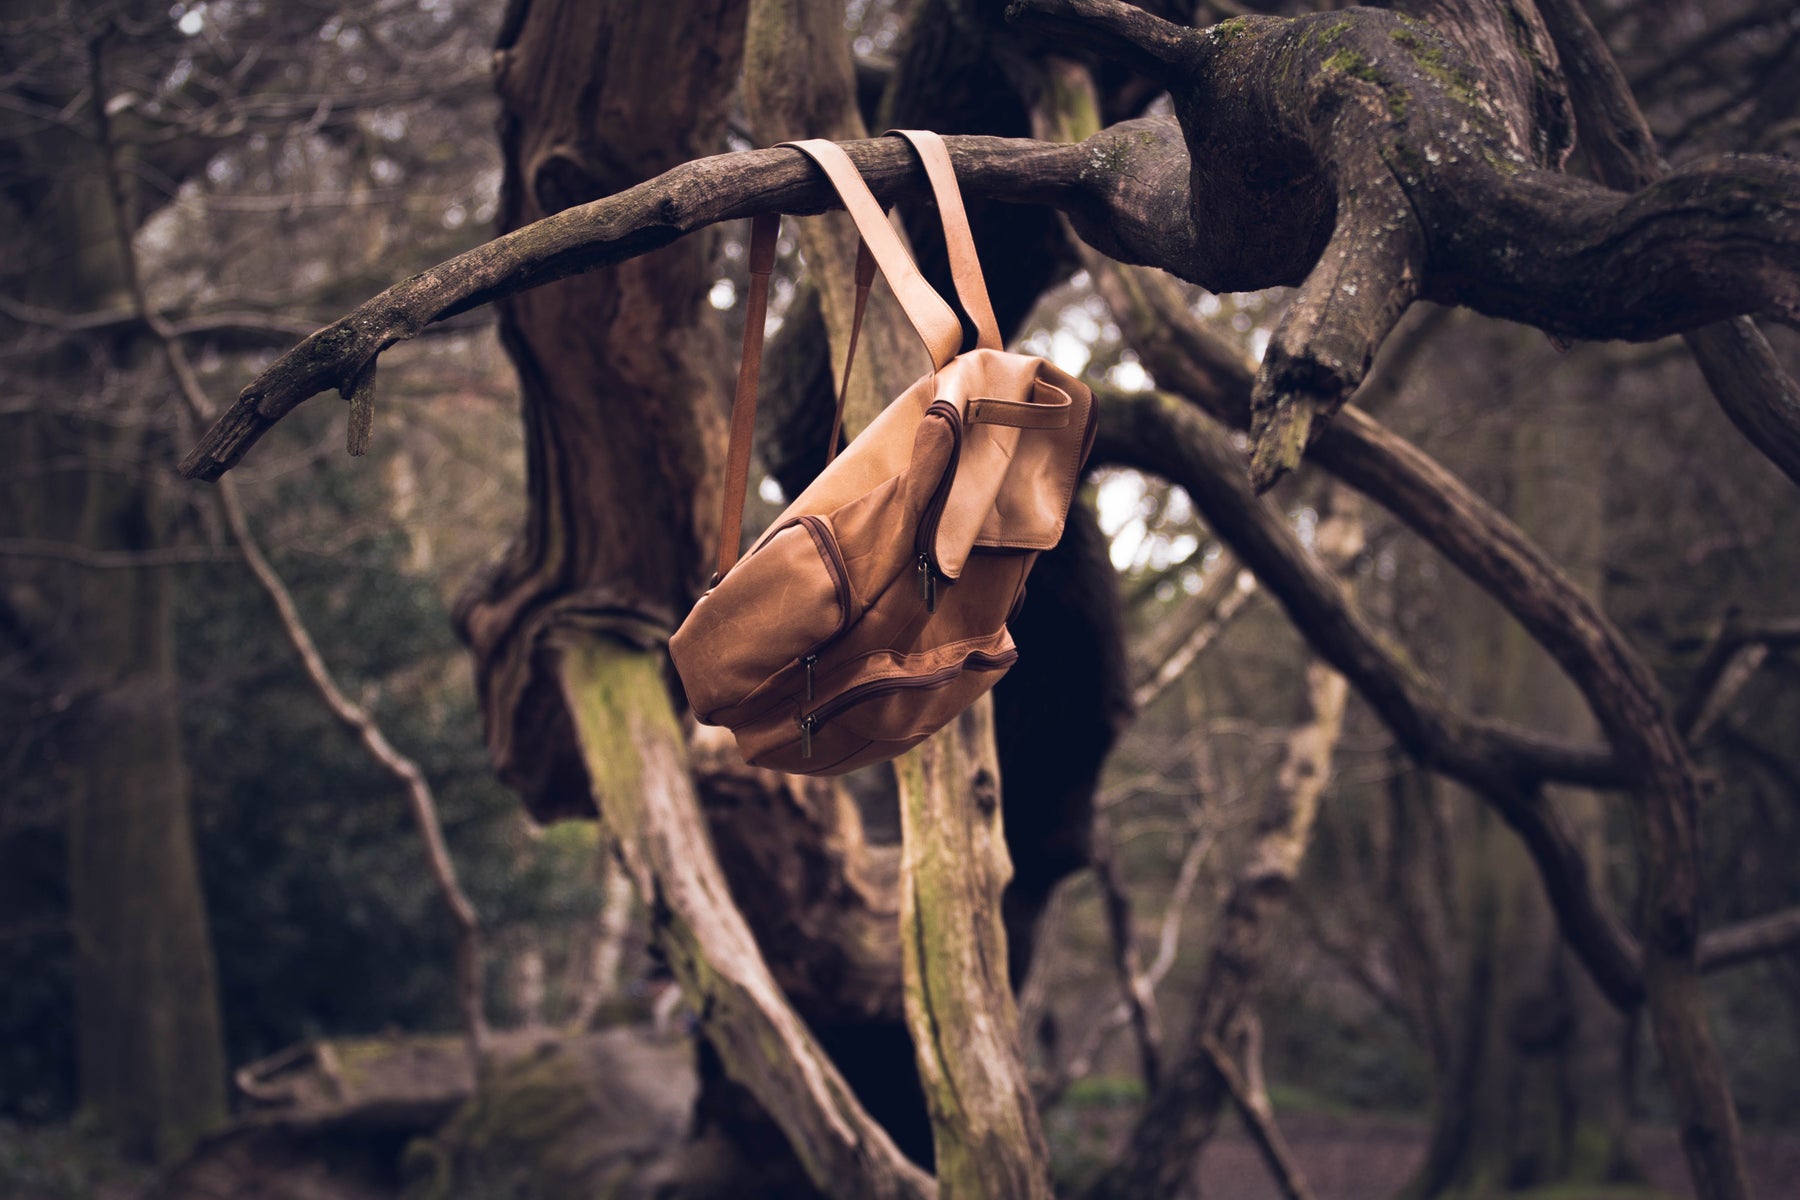 Brauner Rucksack aus veganem Lder, der in einem Baum hängt.